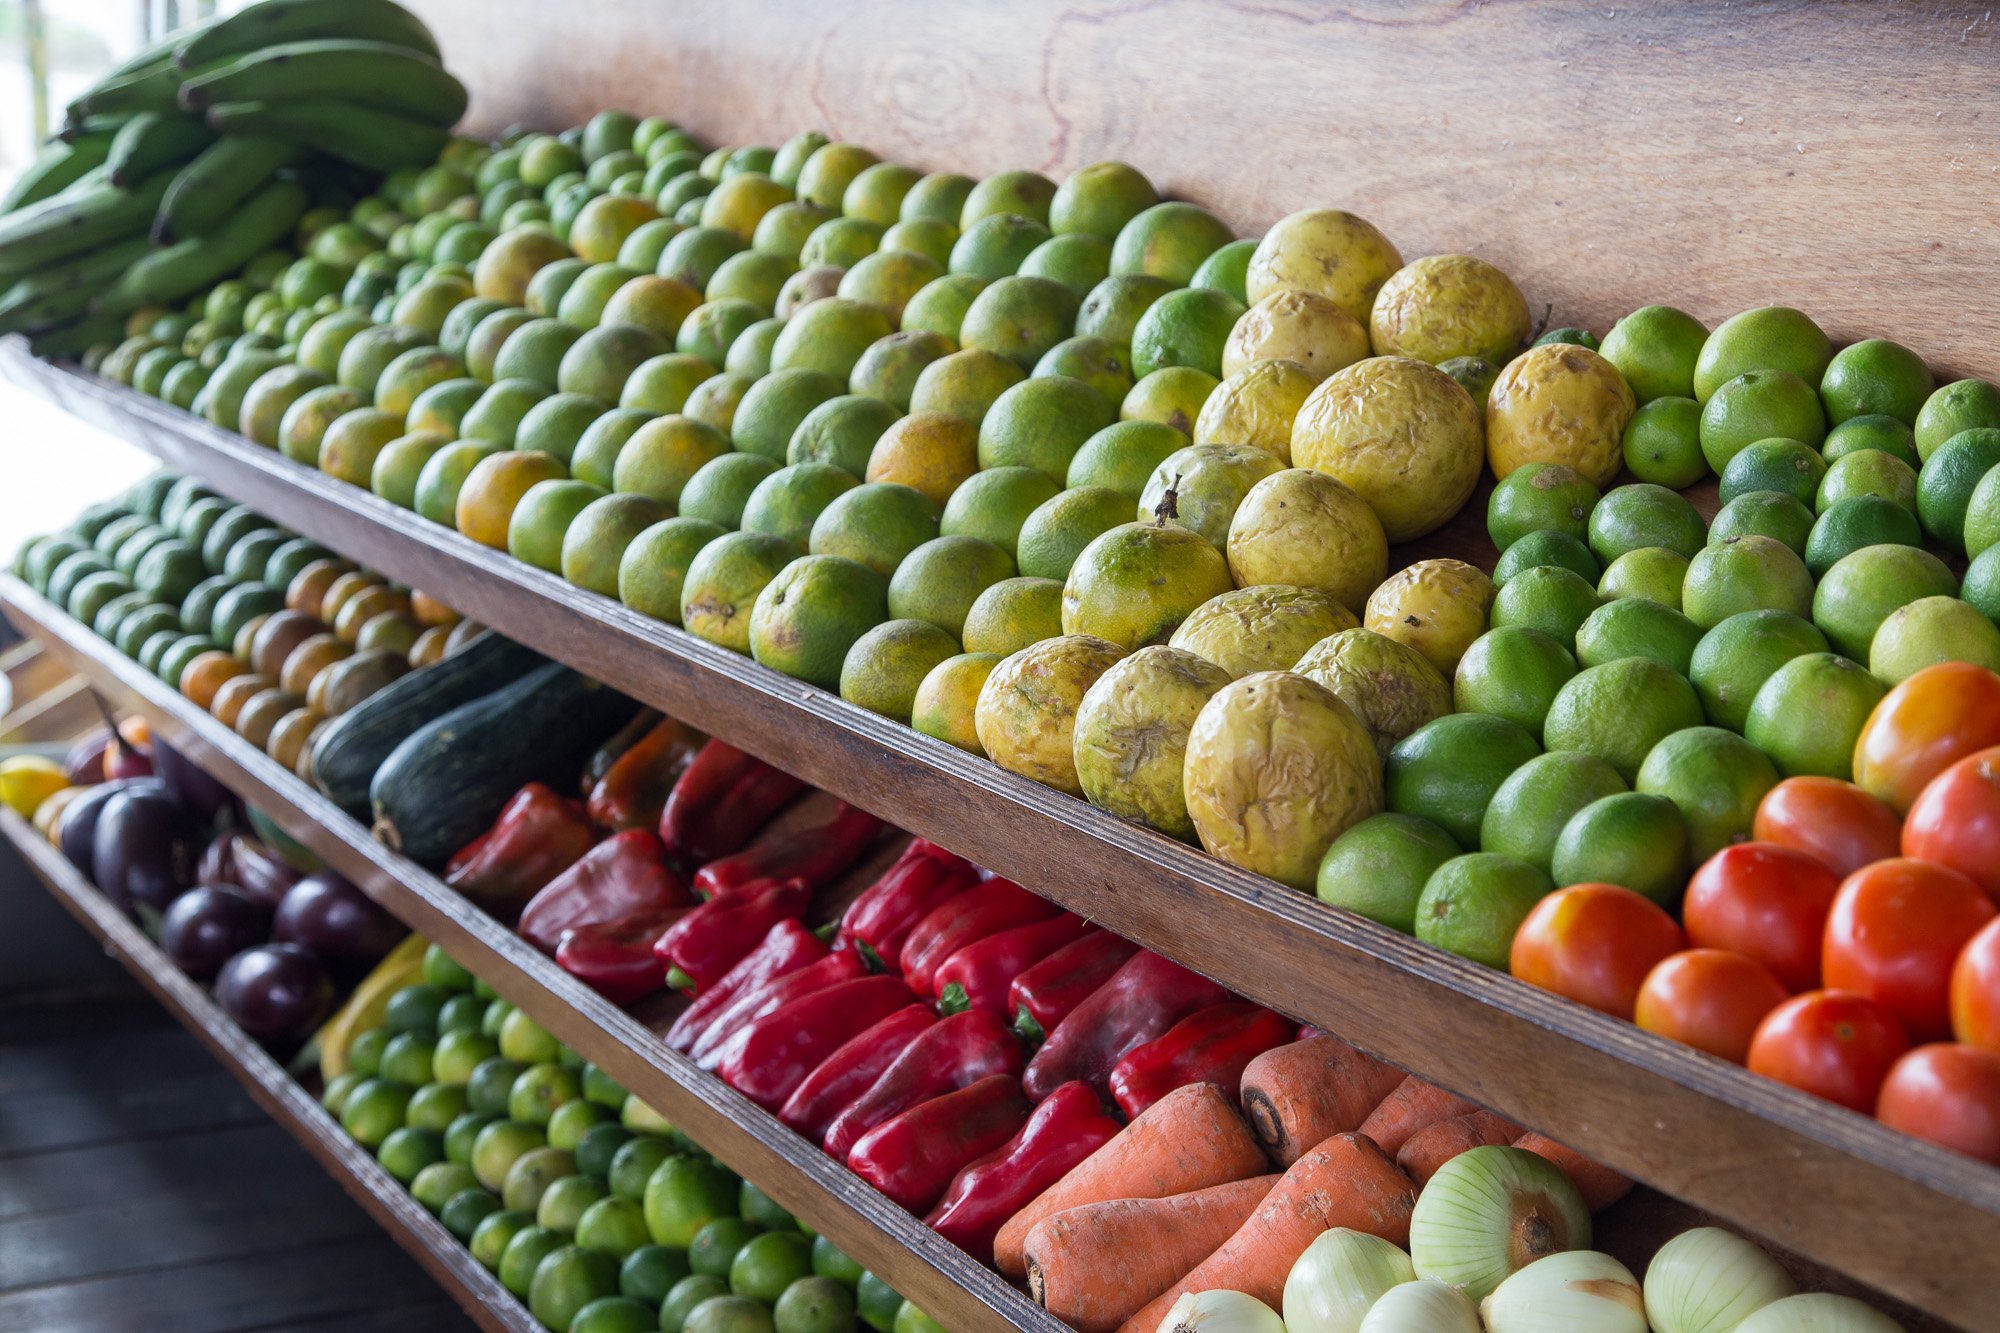 Frutas y verduras en supermercado, limones, pimentones, guayaba, tomate, pepino, naranjas